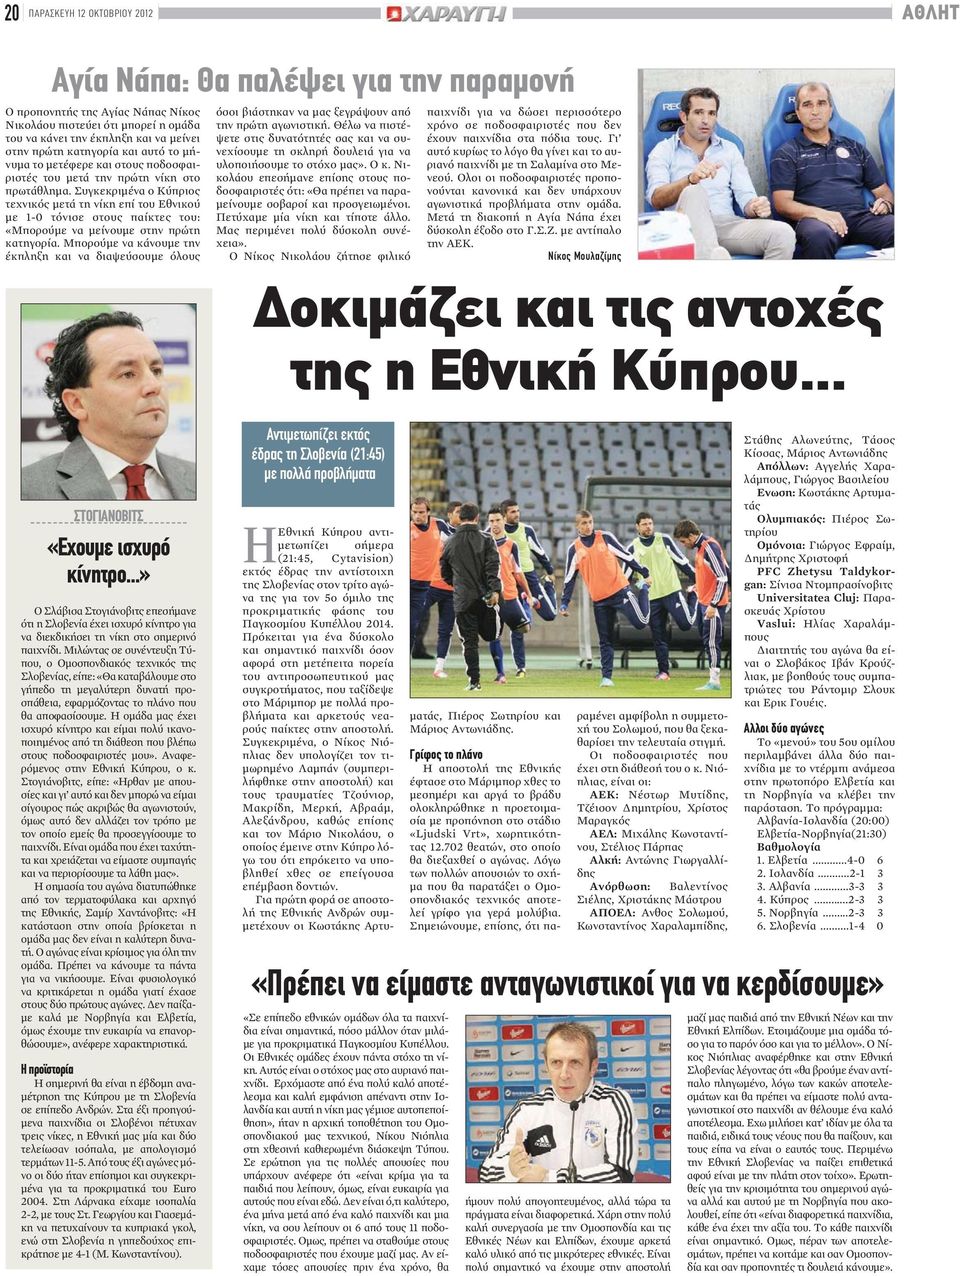 Συγκεκριμένα ο Κύπριος τεχνικός μετά τη νίκη επί του Εθνικού με 1-0 τόνισε στους παίκτες του: «Μπορούμε να μείνουμε στην πρώτη κατηγορία.